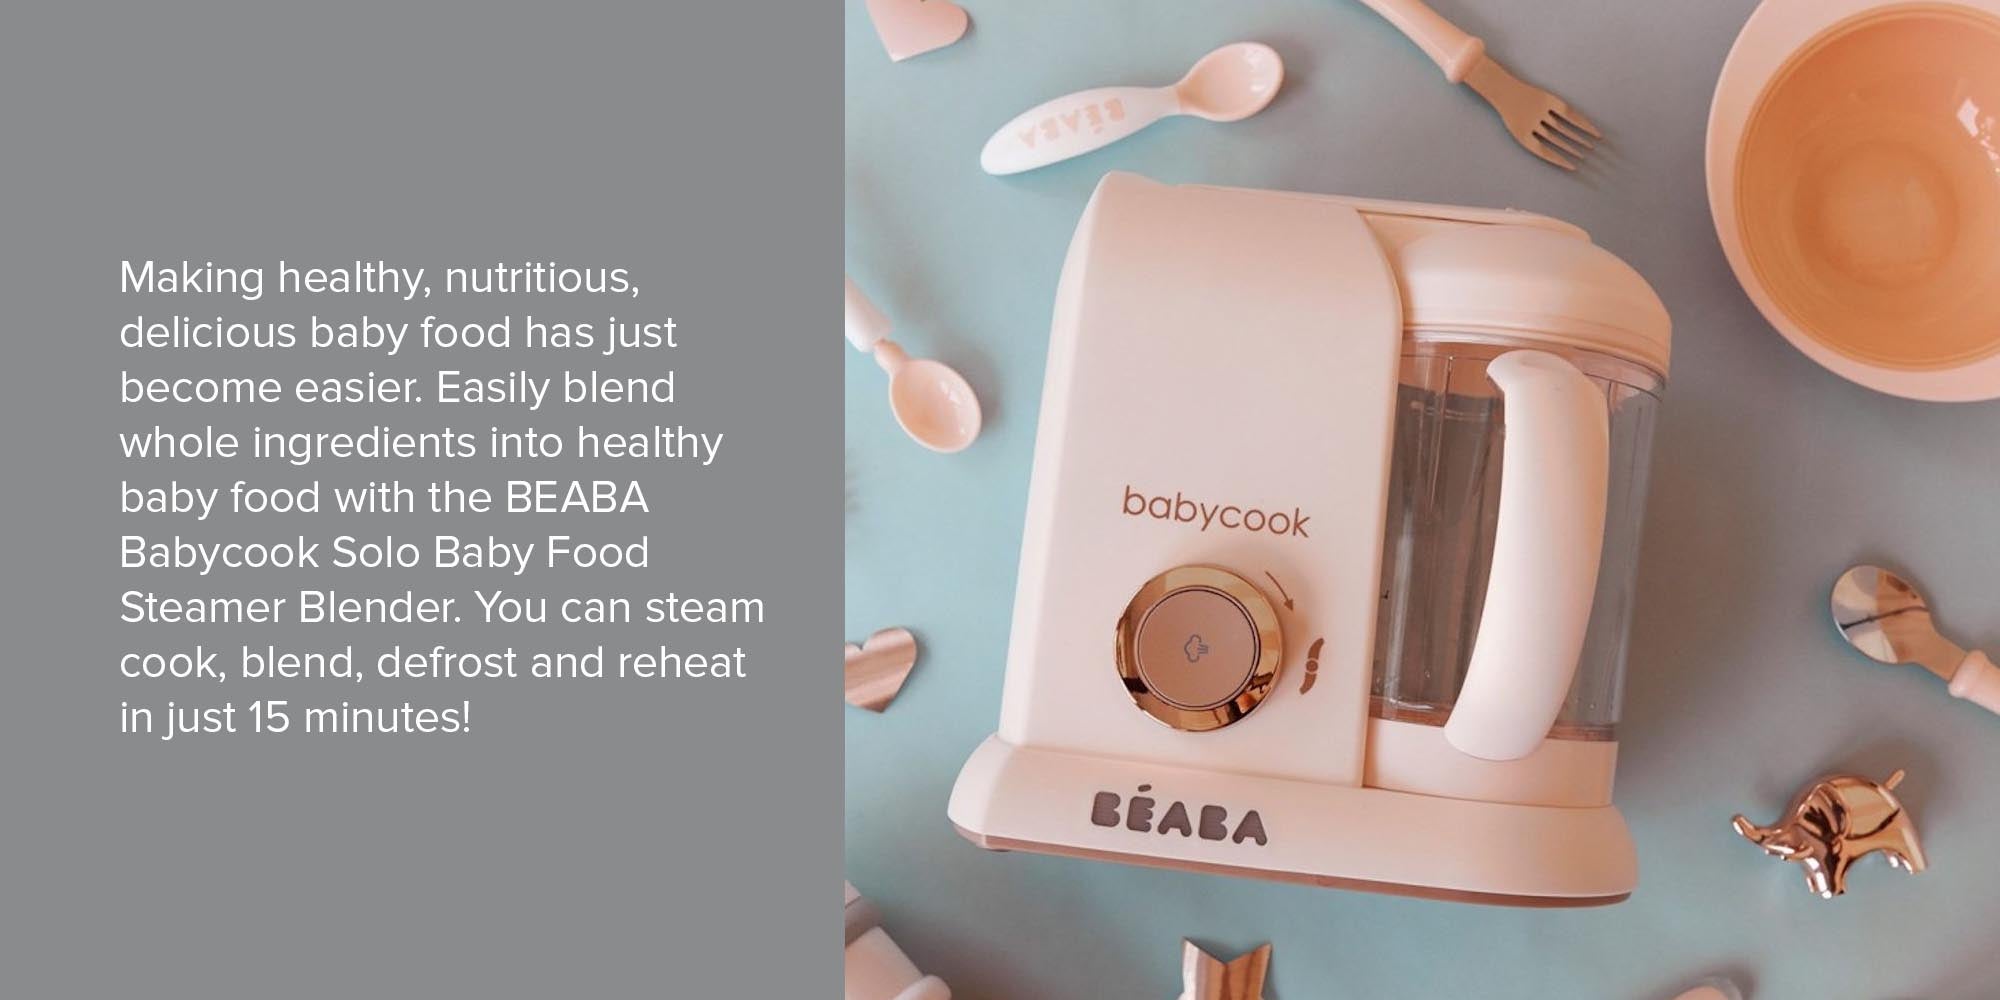 BEABA Babycook Duo babyfood maker-steam cooker blender on